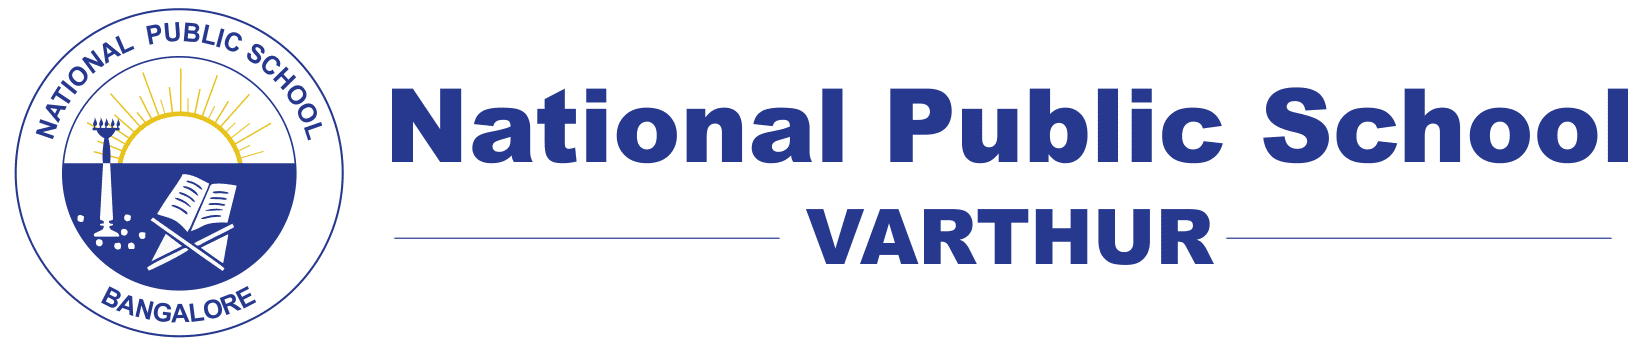 National Public School, NPS Varthur